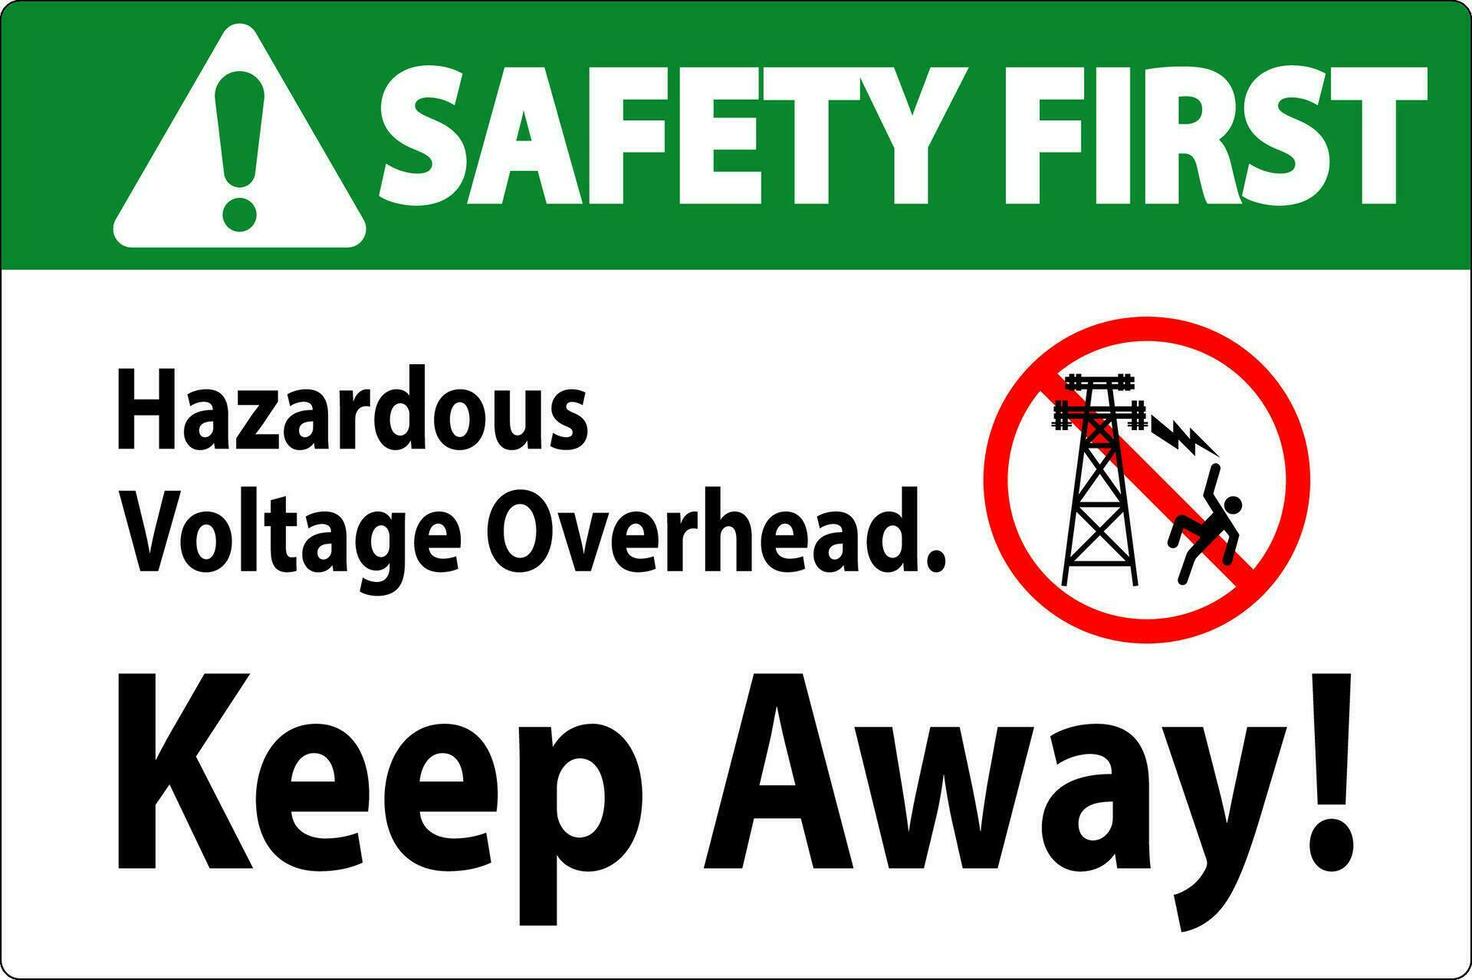 segurança primeiro placa perigoso Voltagem a sobrecarga - manter longe vetor